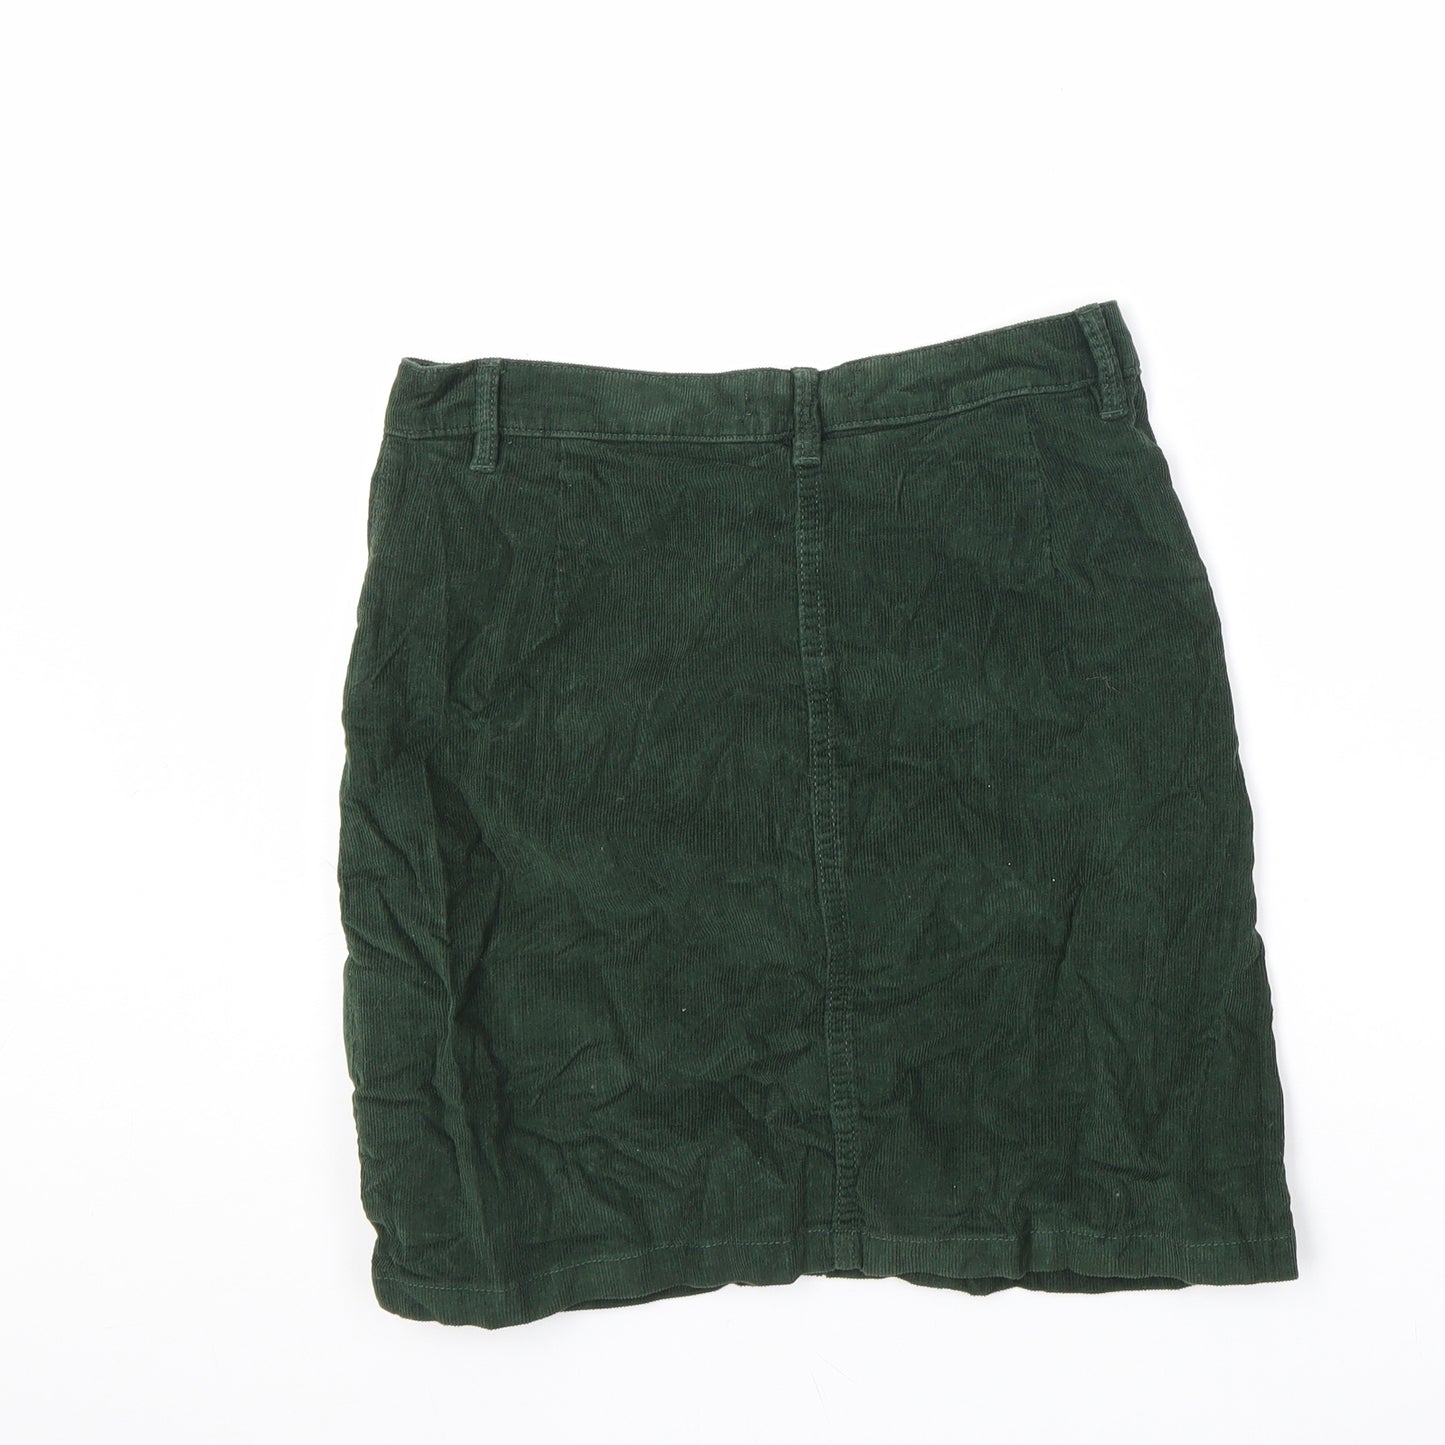 Studio Womens Green Cotton A-Line Skirt Size 8 Zip